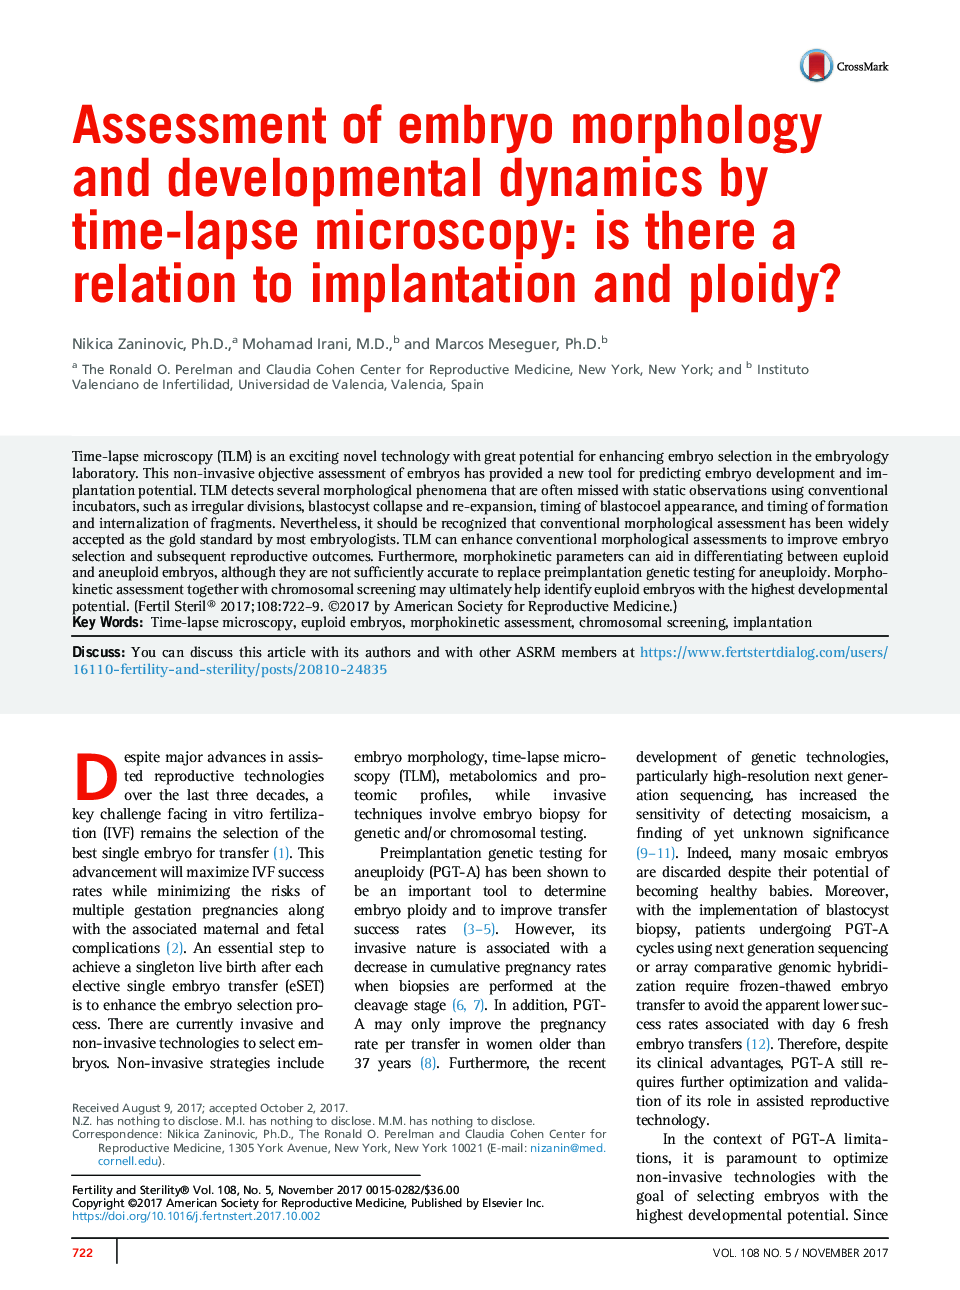 ارزیابی مورفولوژی جنین و دینامیک رشد با میکروسکوپ زمانبندی: آیا ارتباط با لانه گزینی و پلویید وجود دارد؟ 